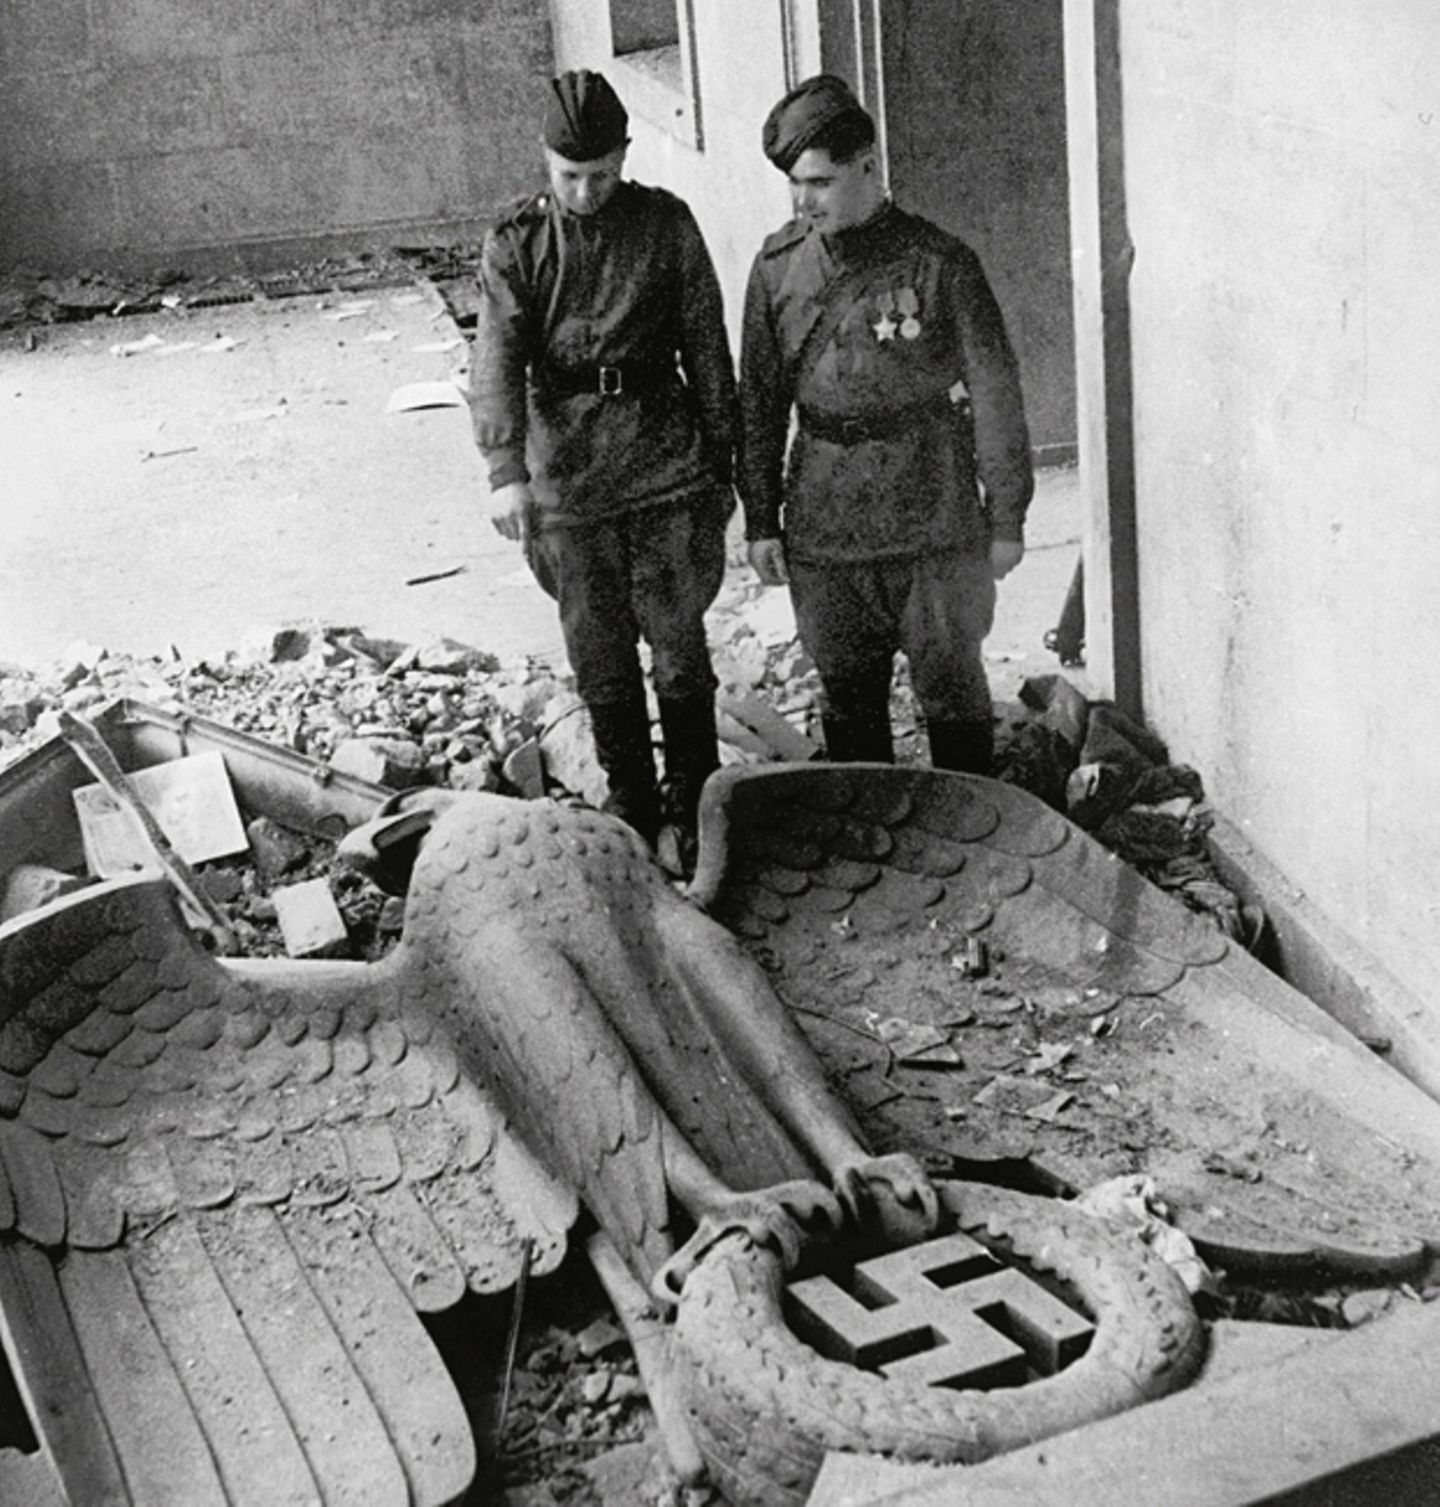 Kriegsende 1945: Nach den tagelangen Straßenkämpfen um Berlin besichtigen Soldaten der sowjetischen Roten Armee die Überreste von Adolf Hitlers Reichskanzlei - dem politischen Zentrum der nationalsozialistischen Diktatur